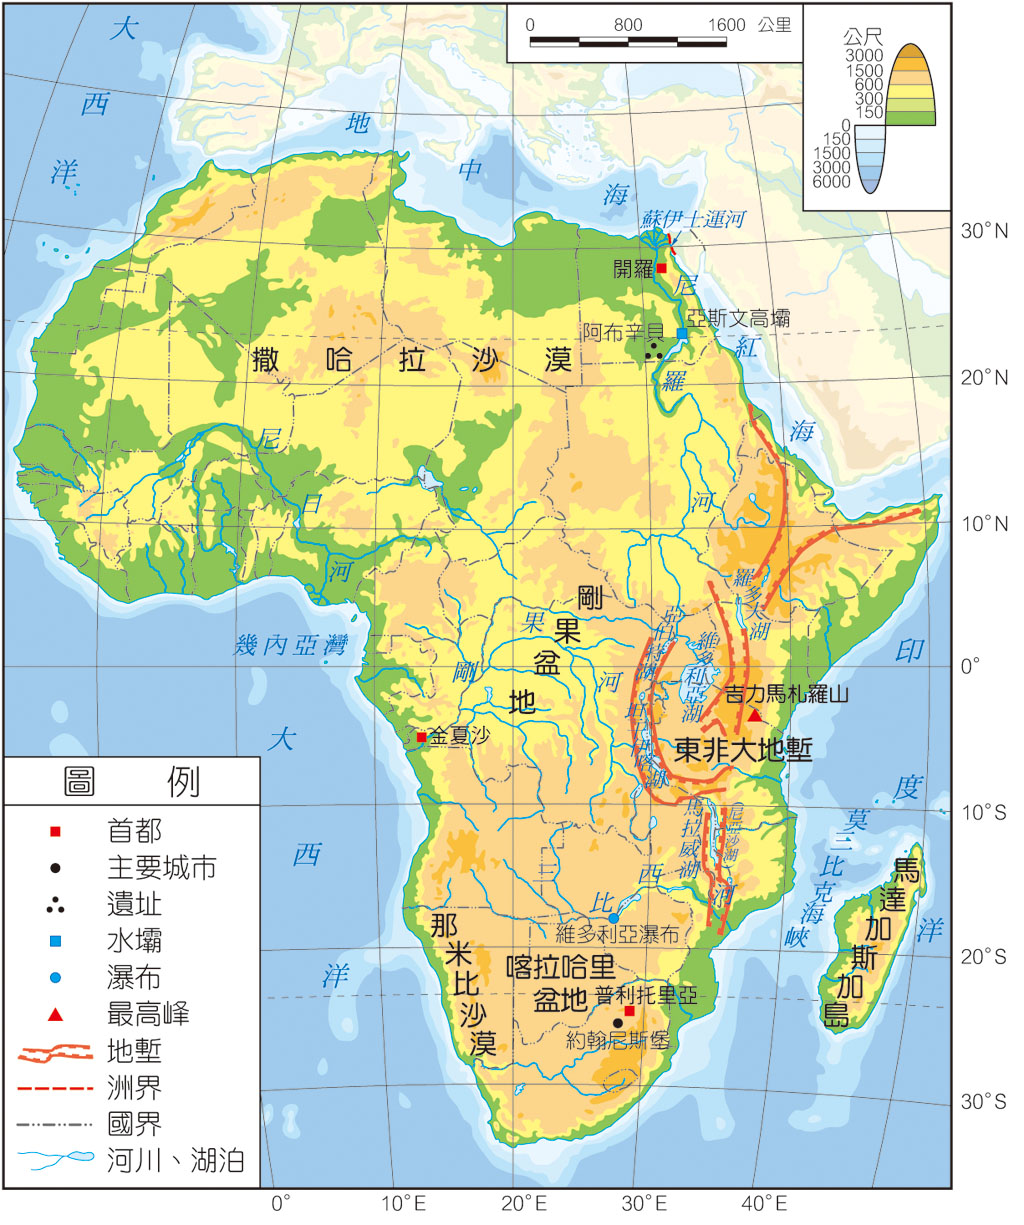 图文解读非洲行政和地理，高清地图可收藏 - 知乎